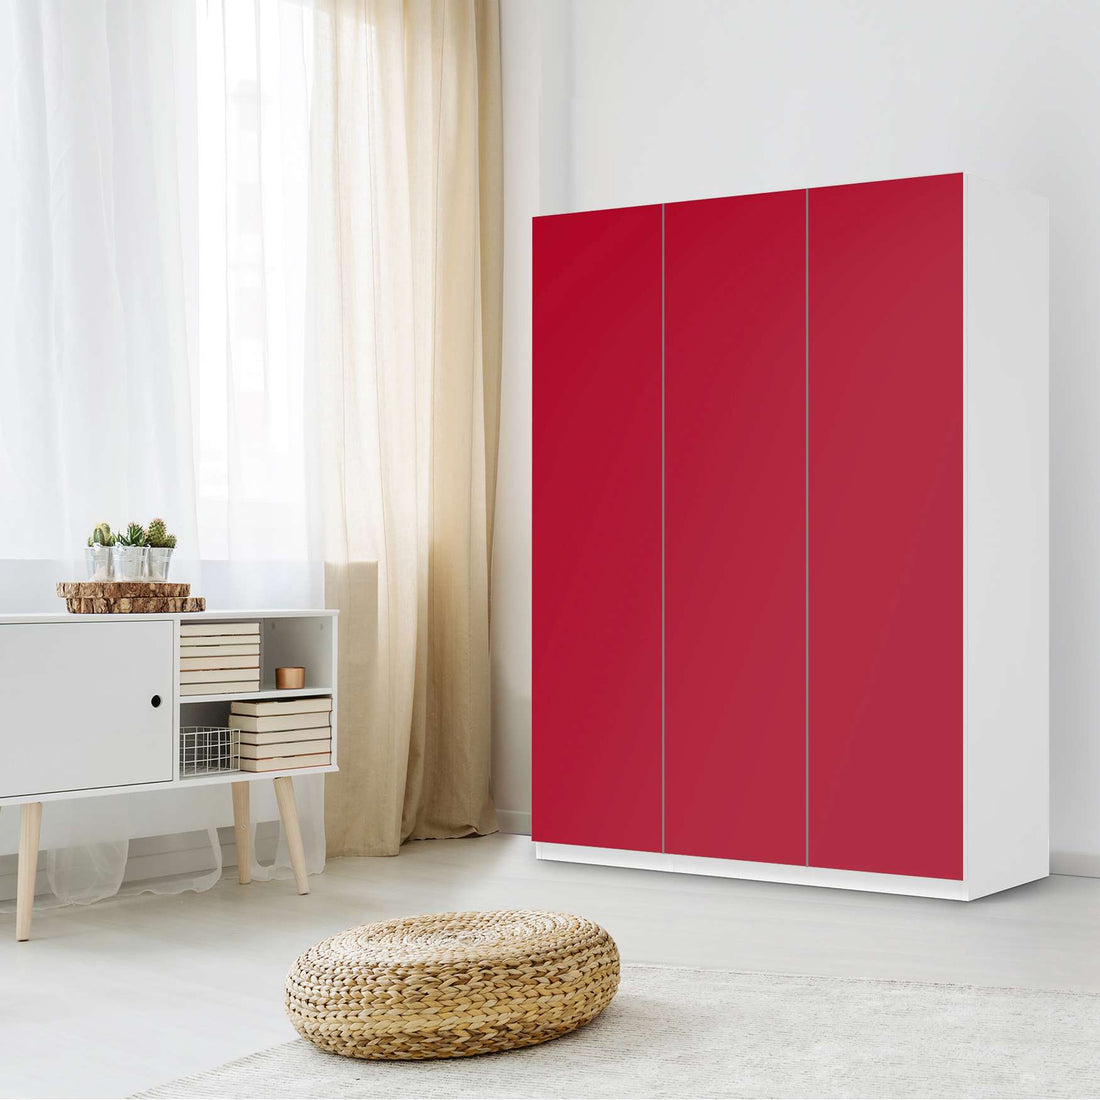 Folie für Möbel Rot Dark - IKEA Pax Schrank 201 cm Höhe - 3 Türen - Schlafzimmer